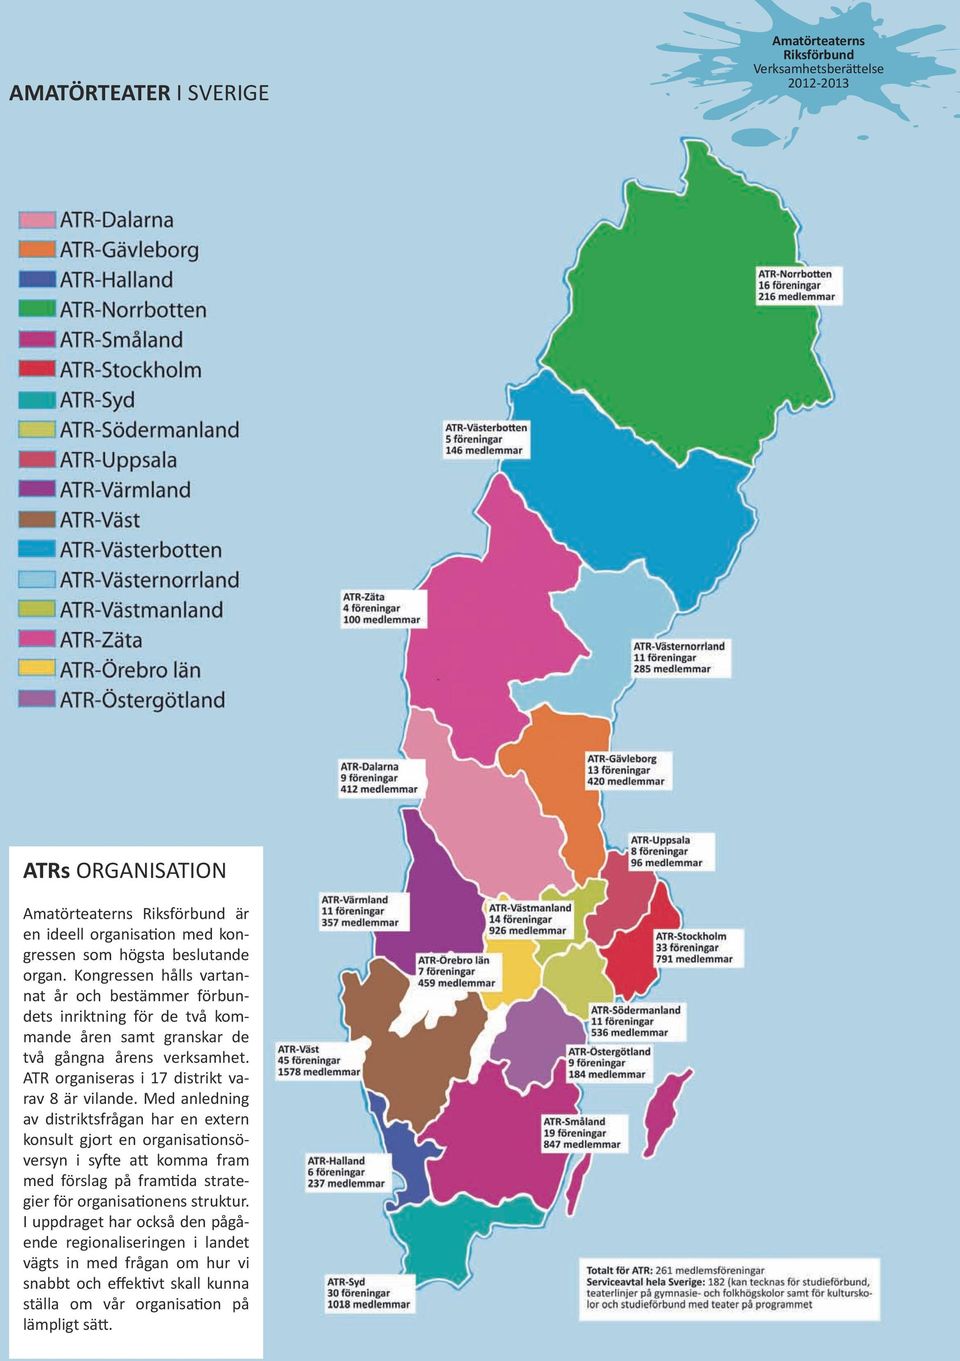 ATR organiseras i 17 distrikt varav 8 är vilande.